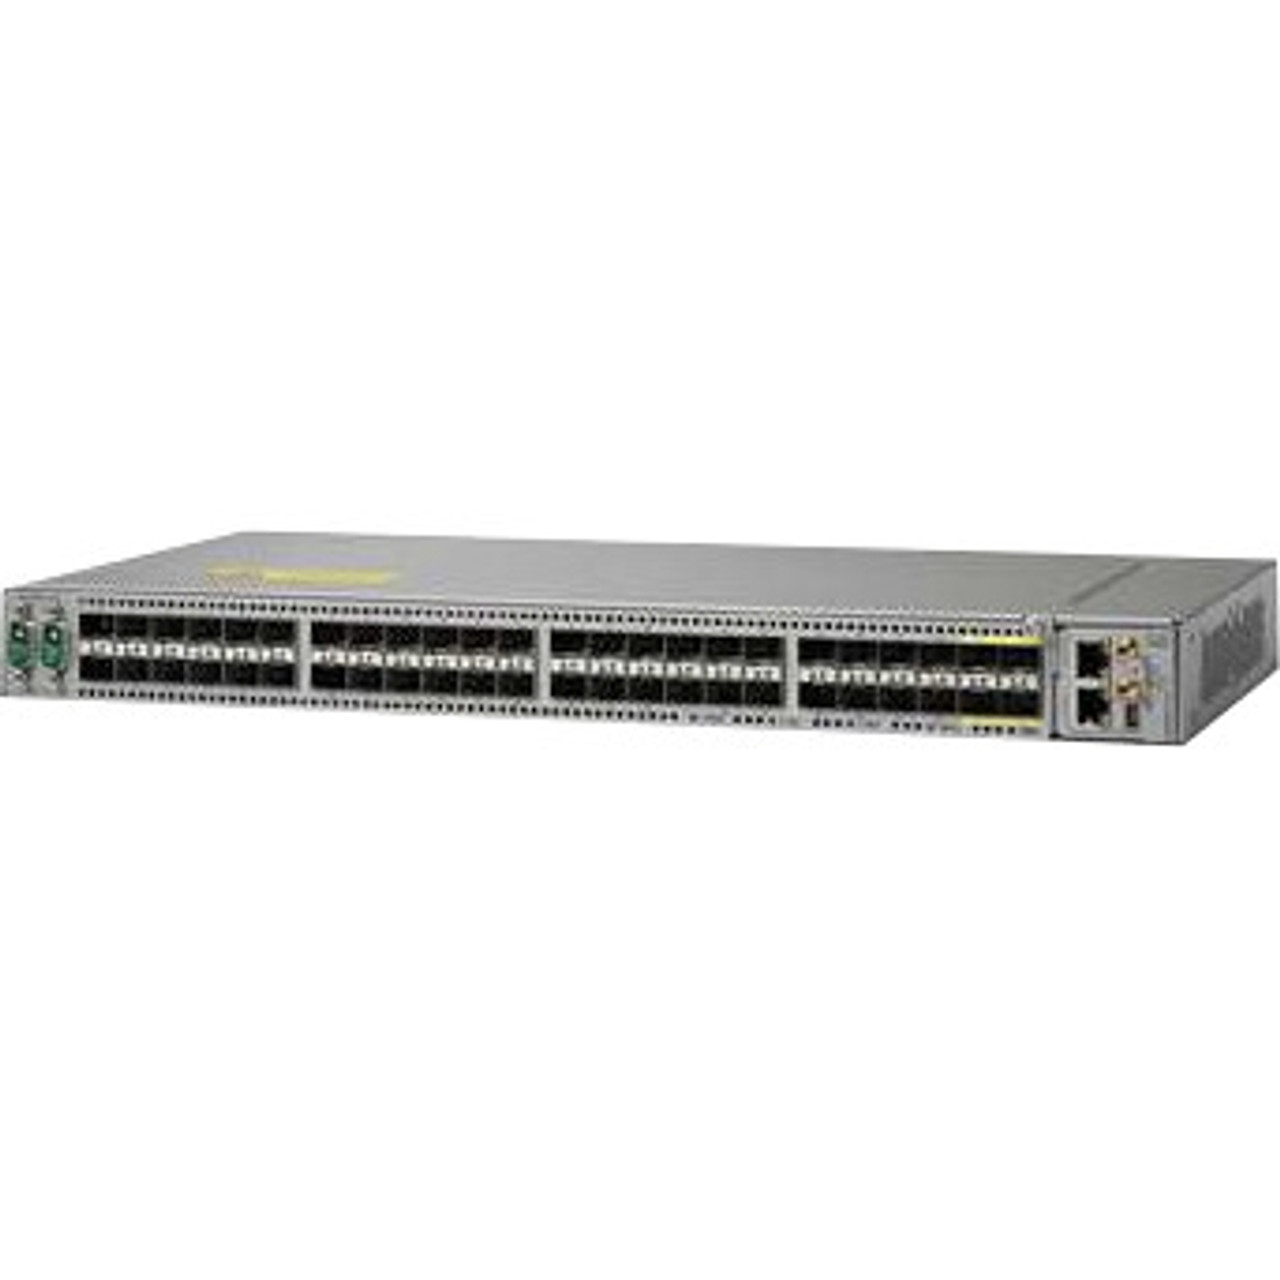 ASR-9000V-AC= Cisco 44-Ports GE + 4-Port 10-GE ASR 9000v AC Power (Refurbished)